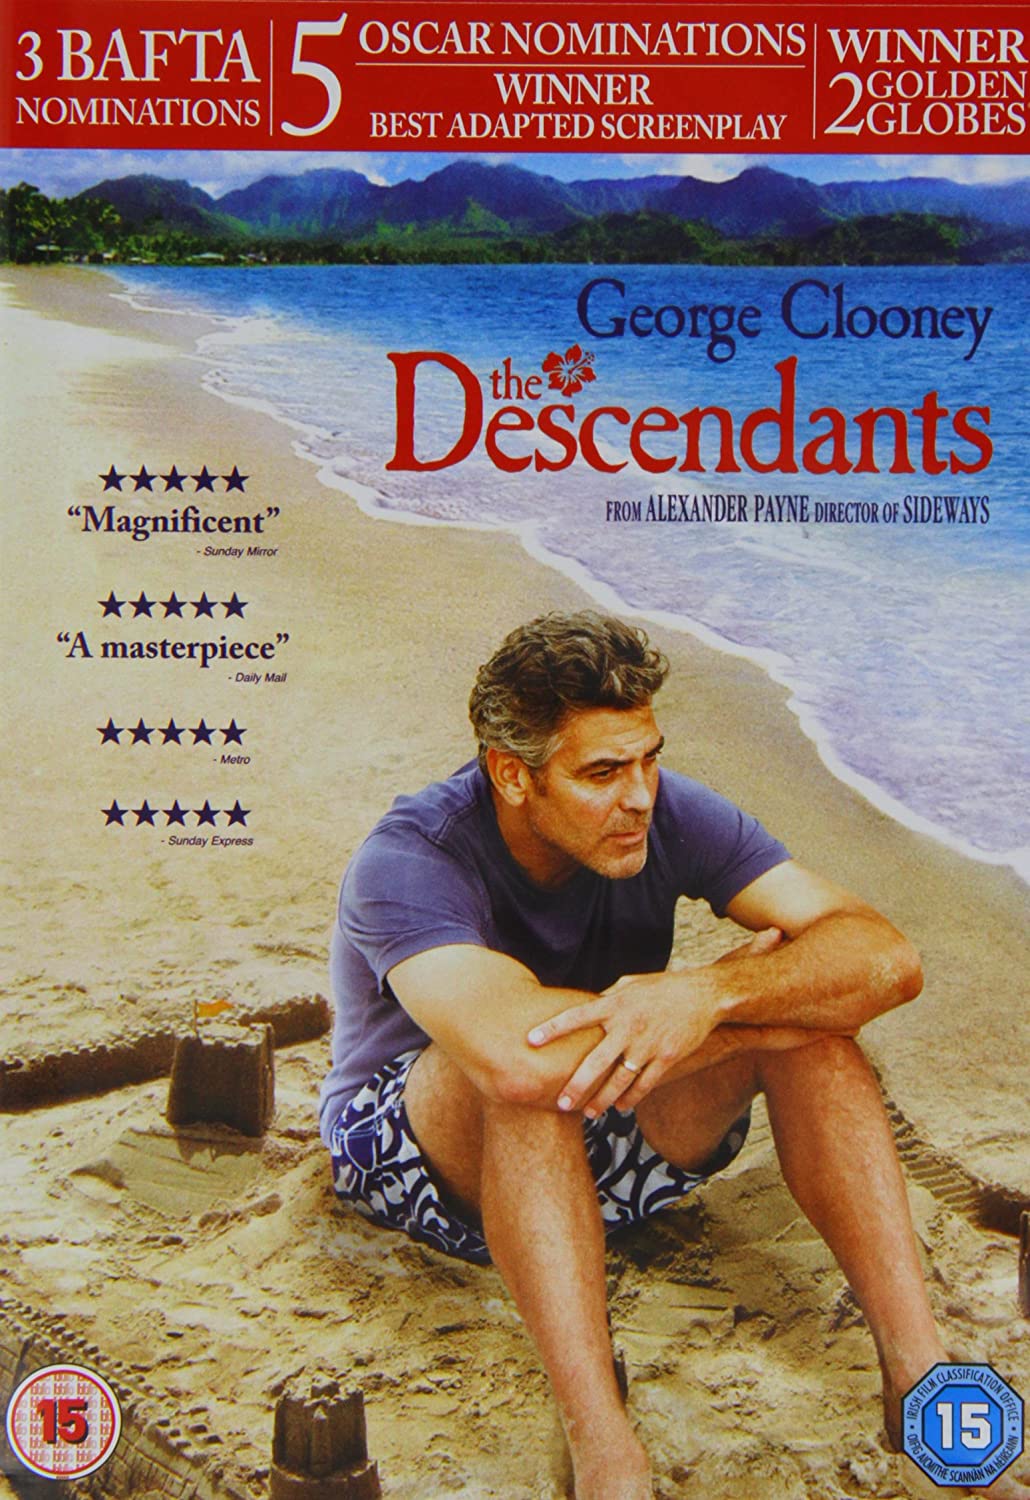 The Descendants - Drama/Comedy [DVD]